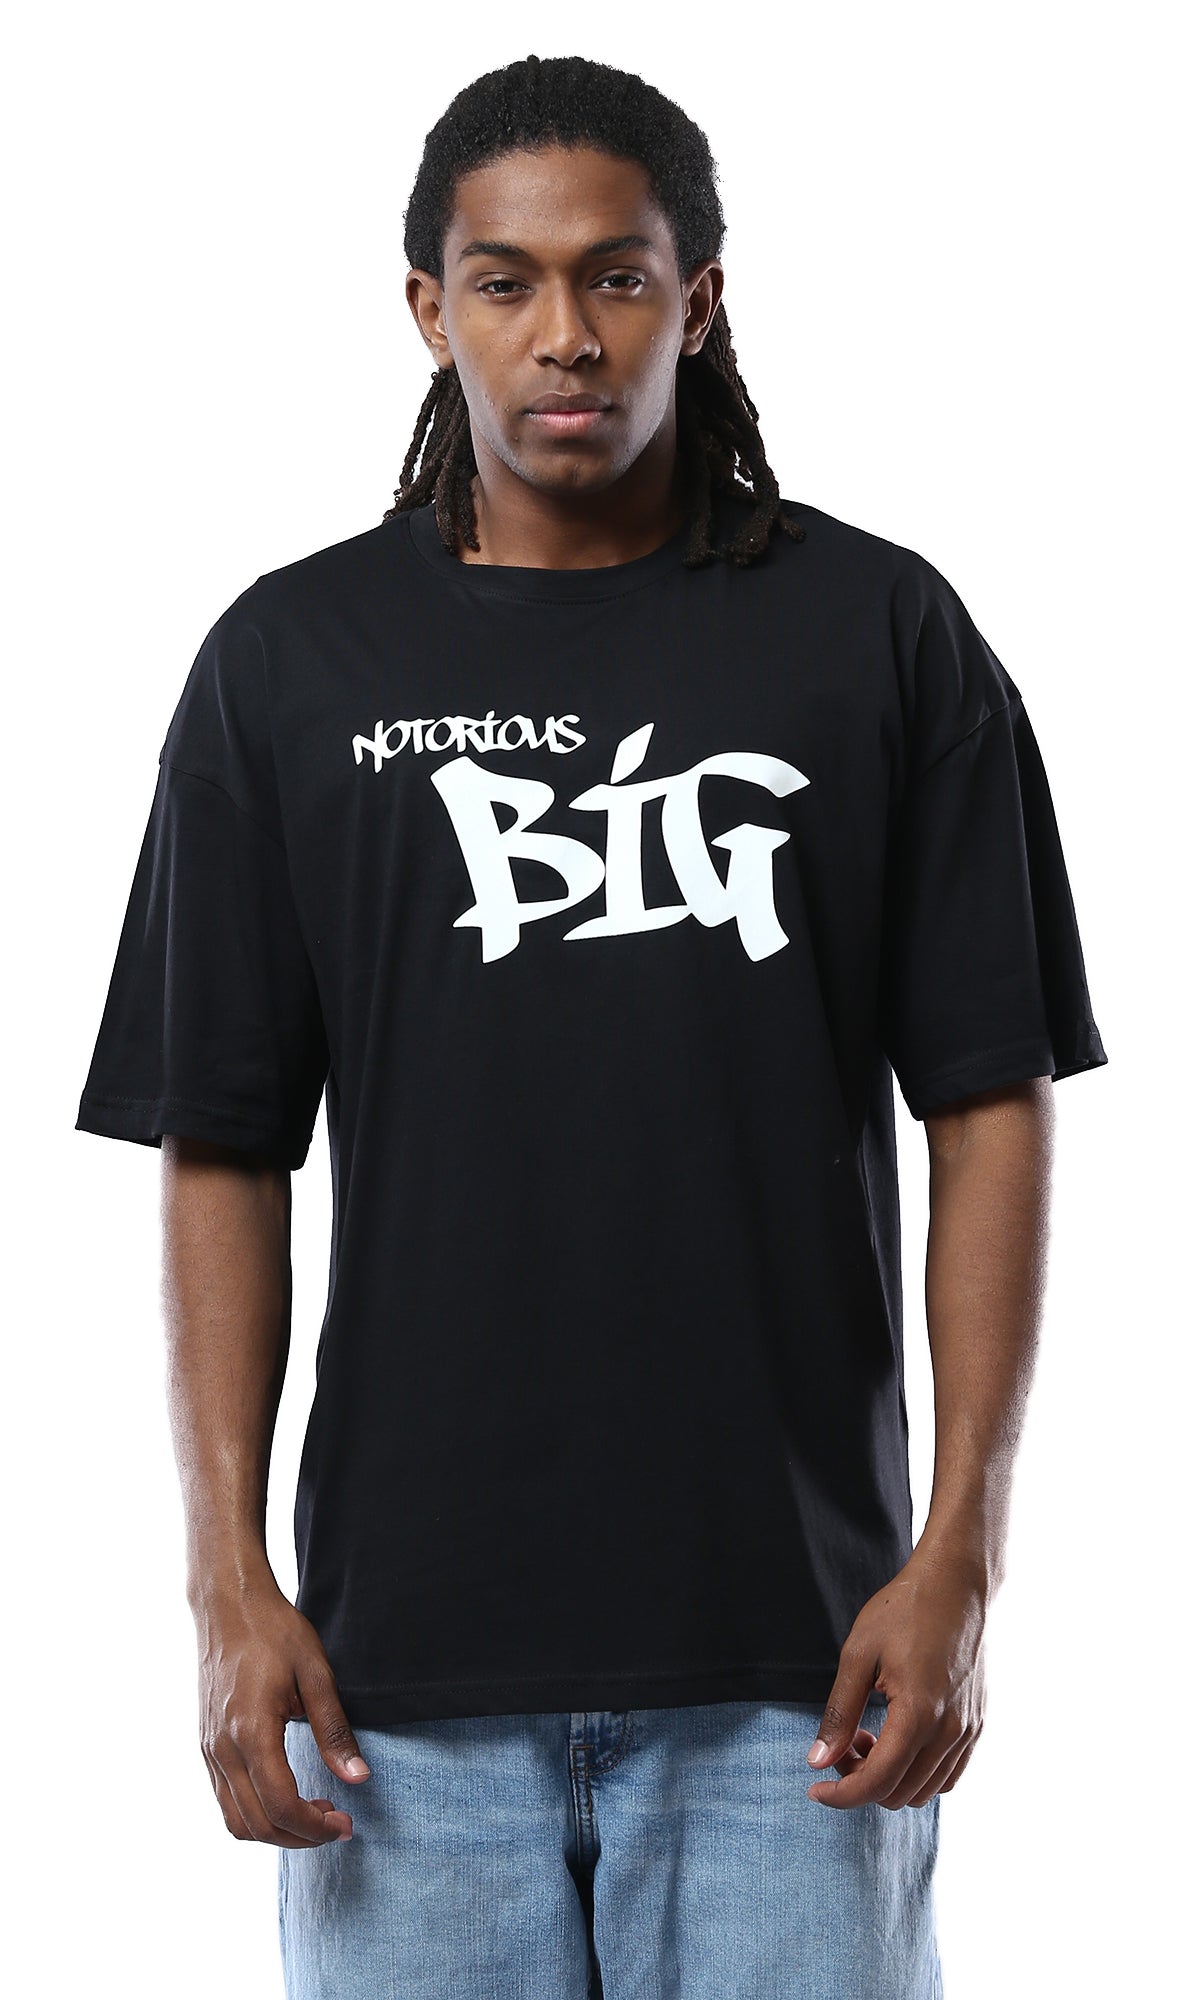 O178391 "Notorious Big" Elbow-Sleeves Slip On Black Tee